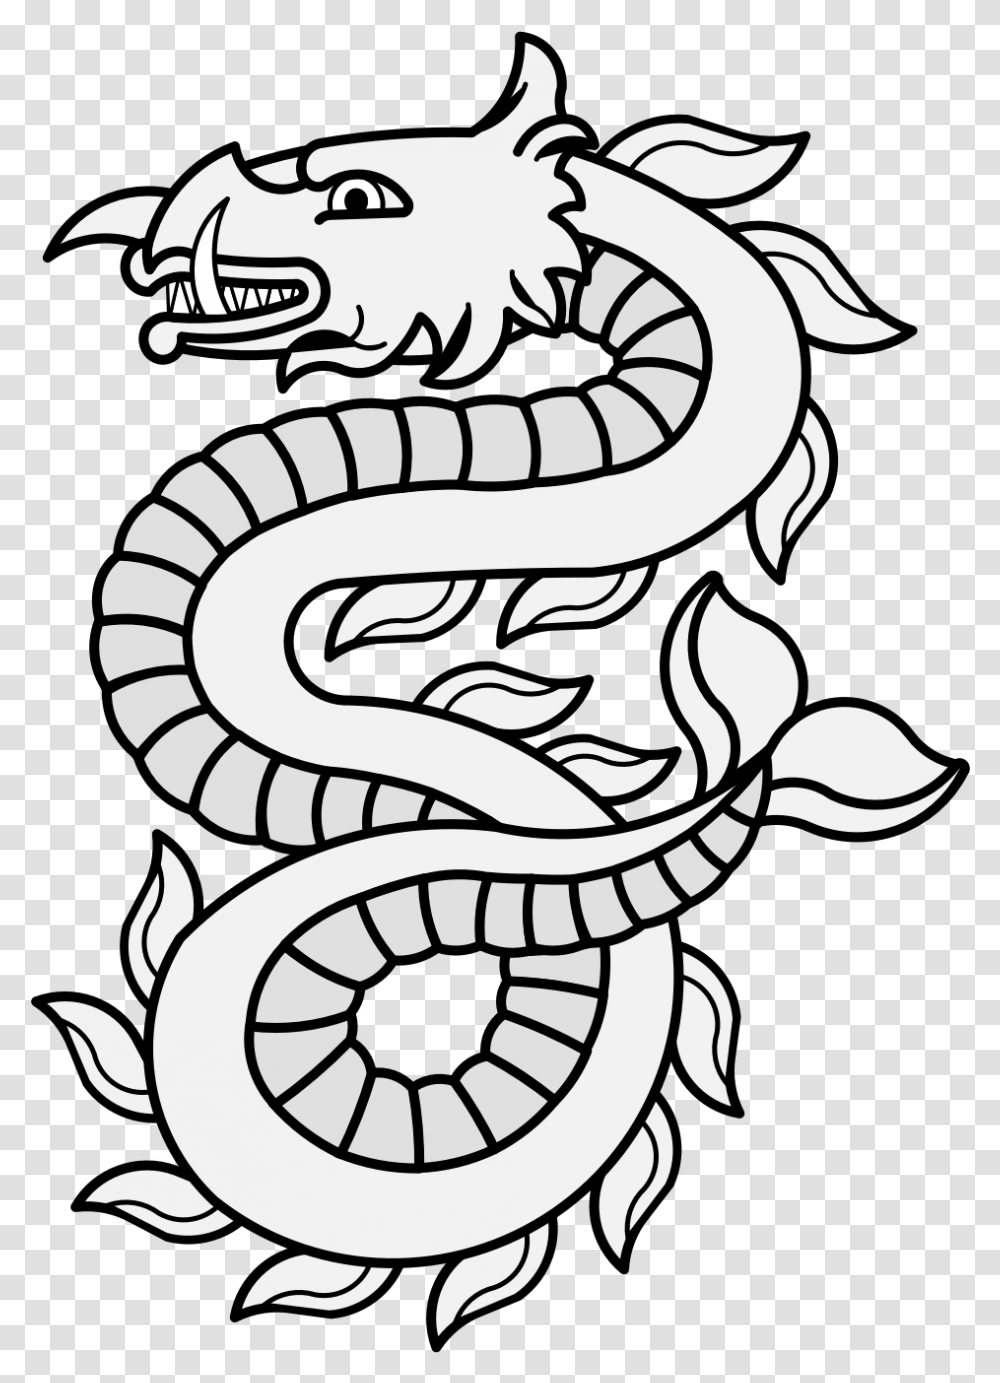 Sea Monster Drawing Free Download Free Fire Para Pintar, Reptile, Animal, Snake, King Snake Transparent Png